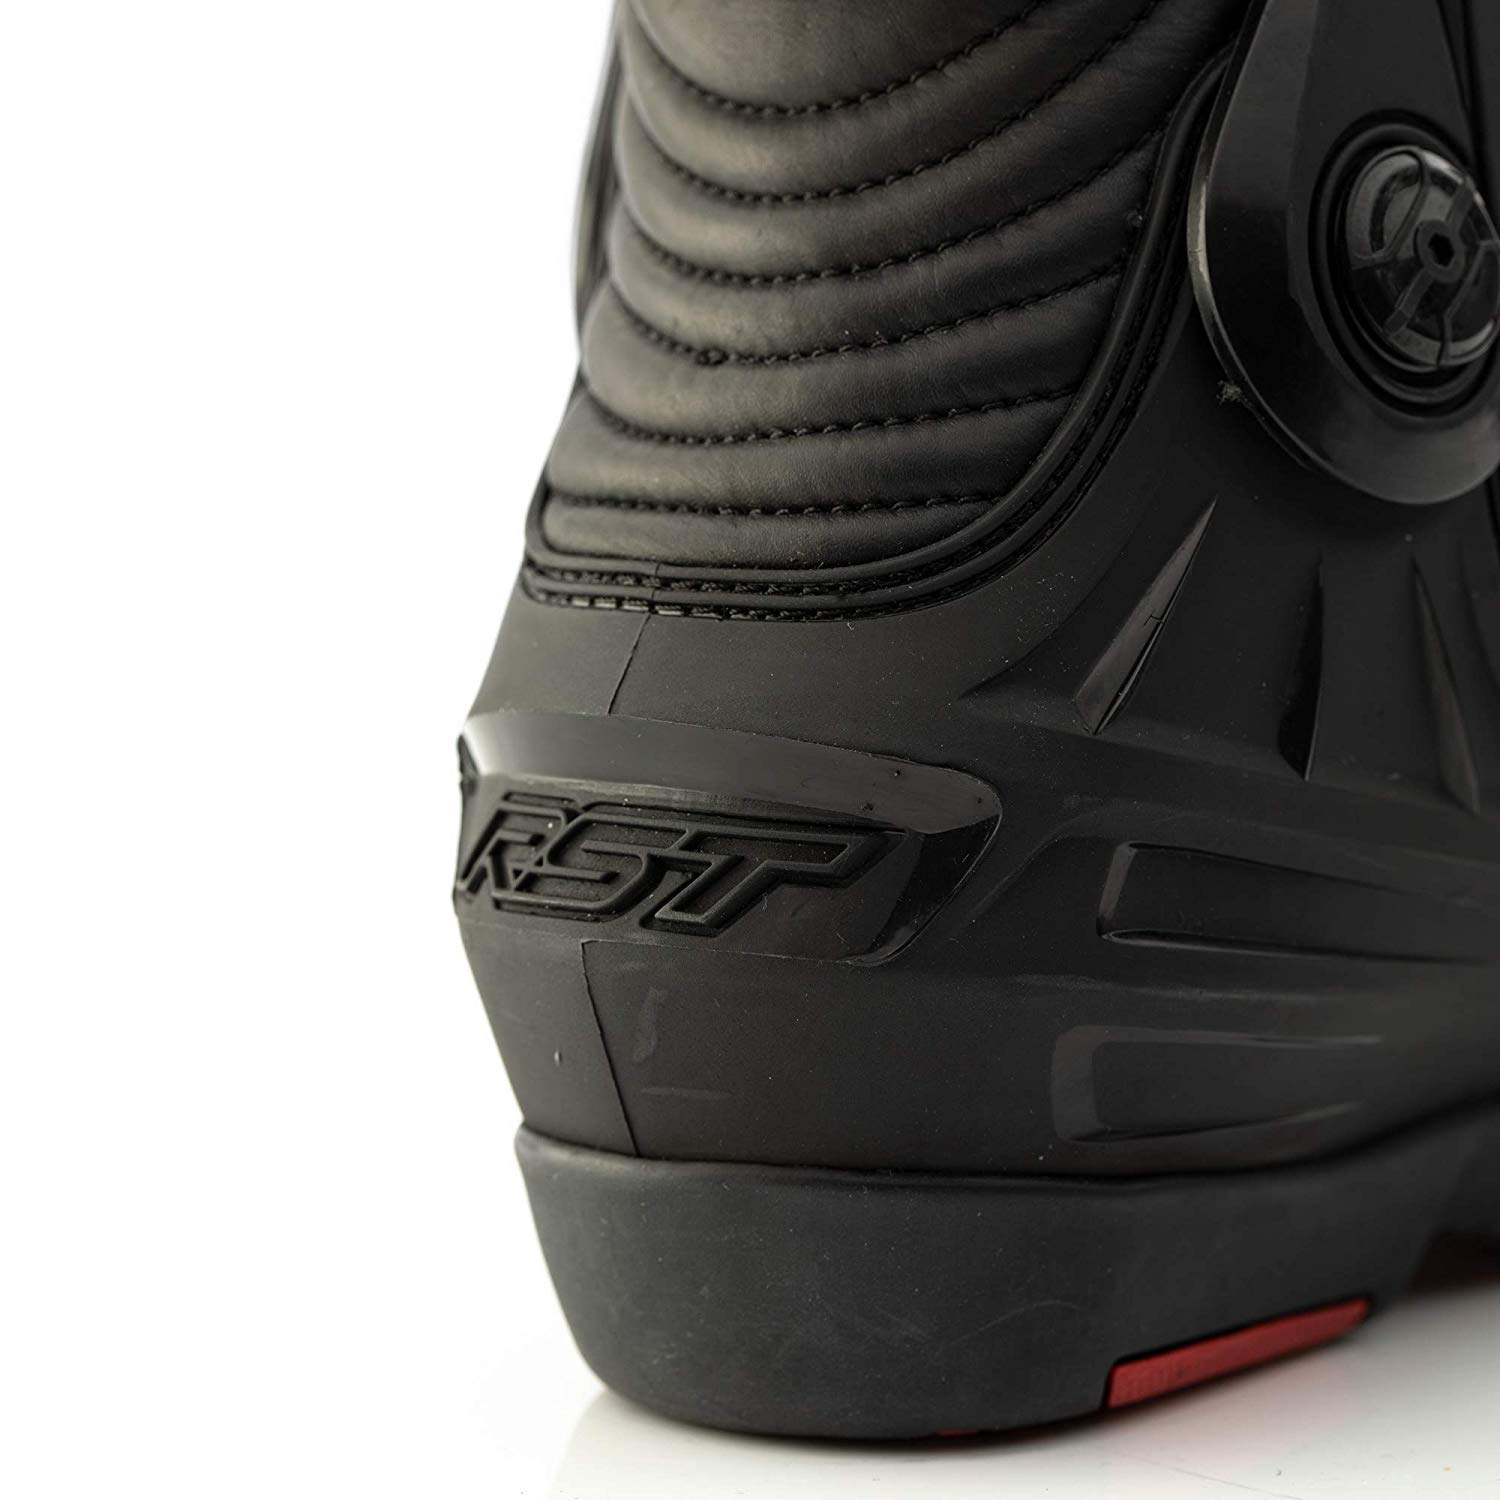 RST Boots Tractech Evo III Sport CE Black/Black 46 von RST